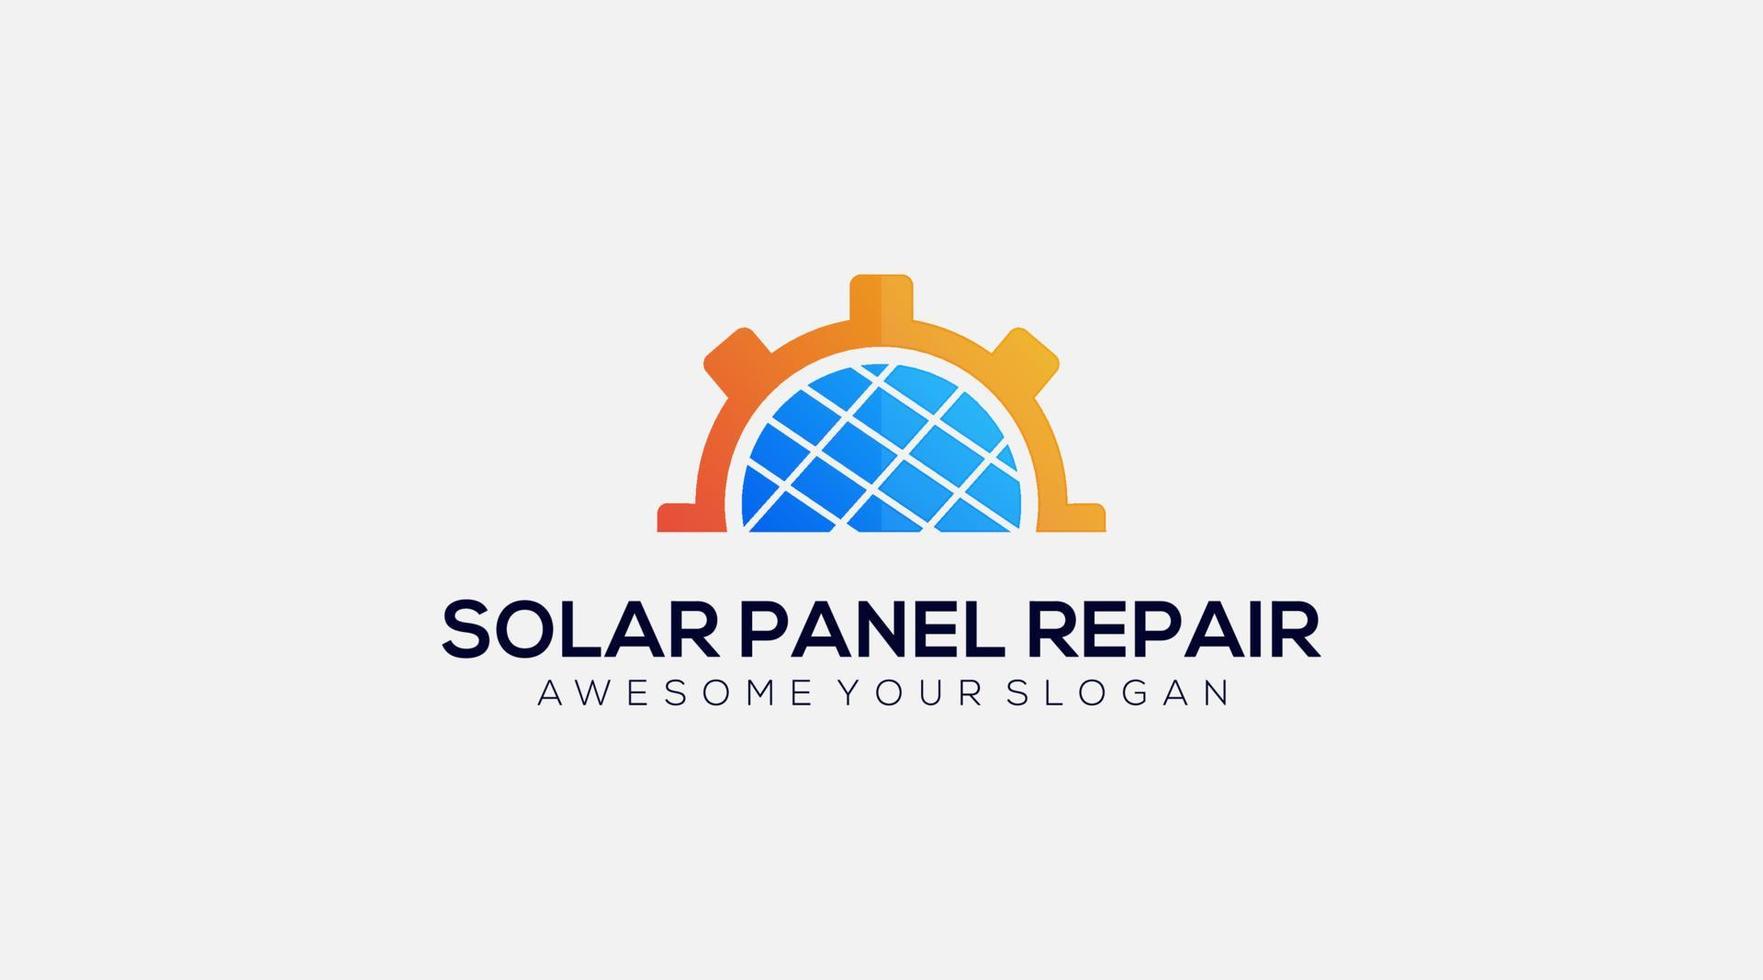 Solar panel gear repair logo design illustration vector